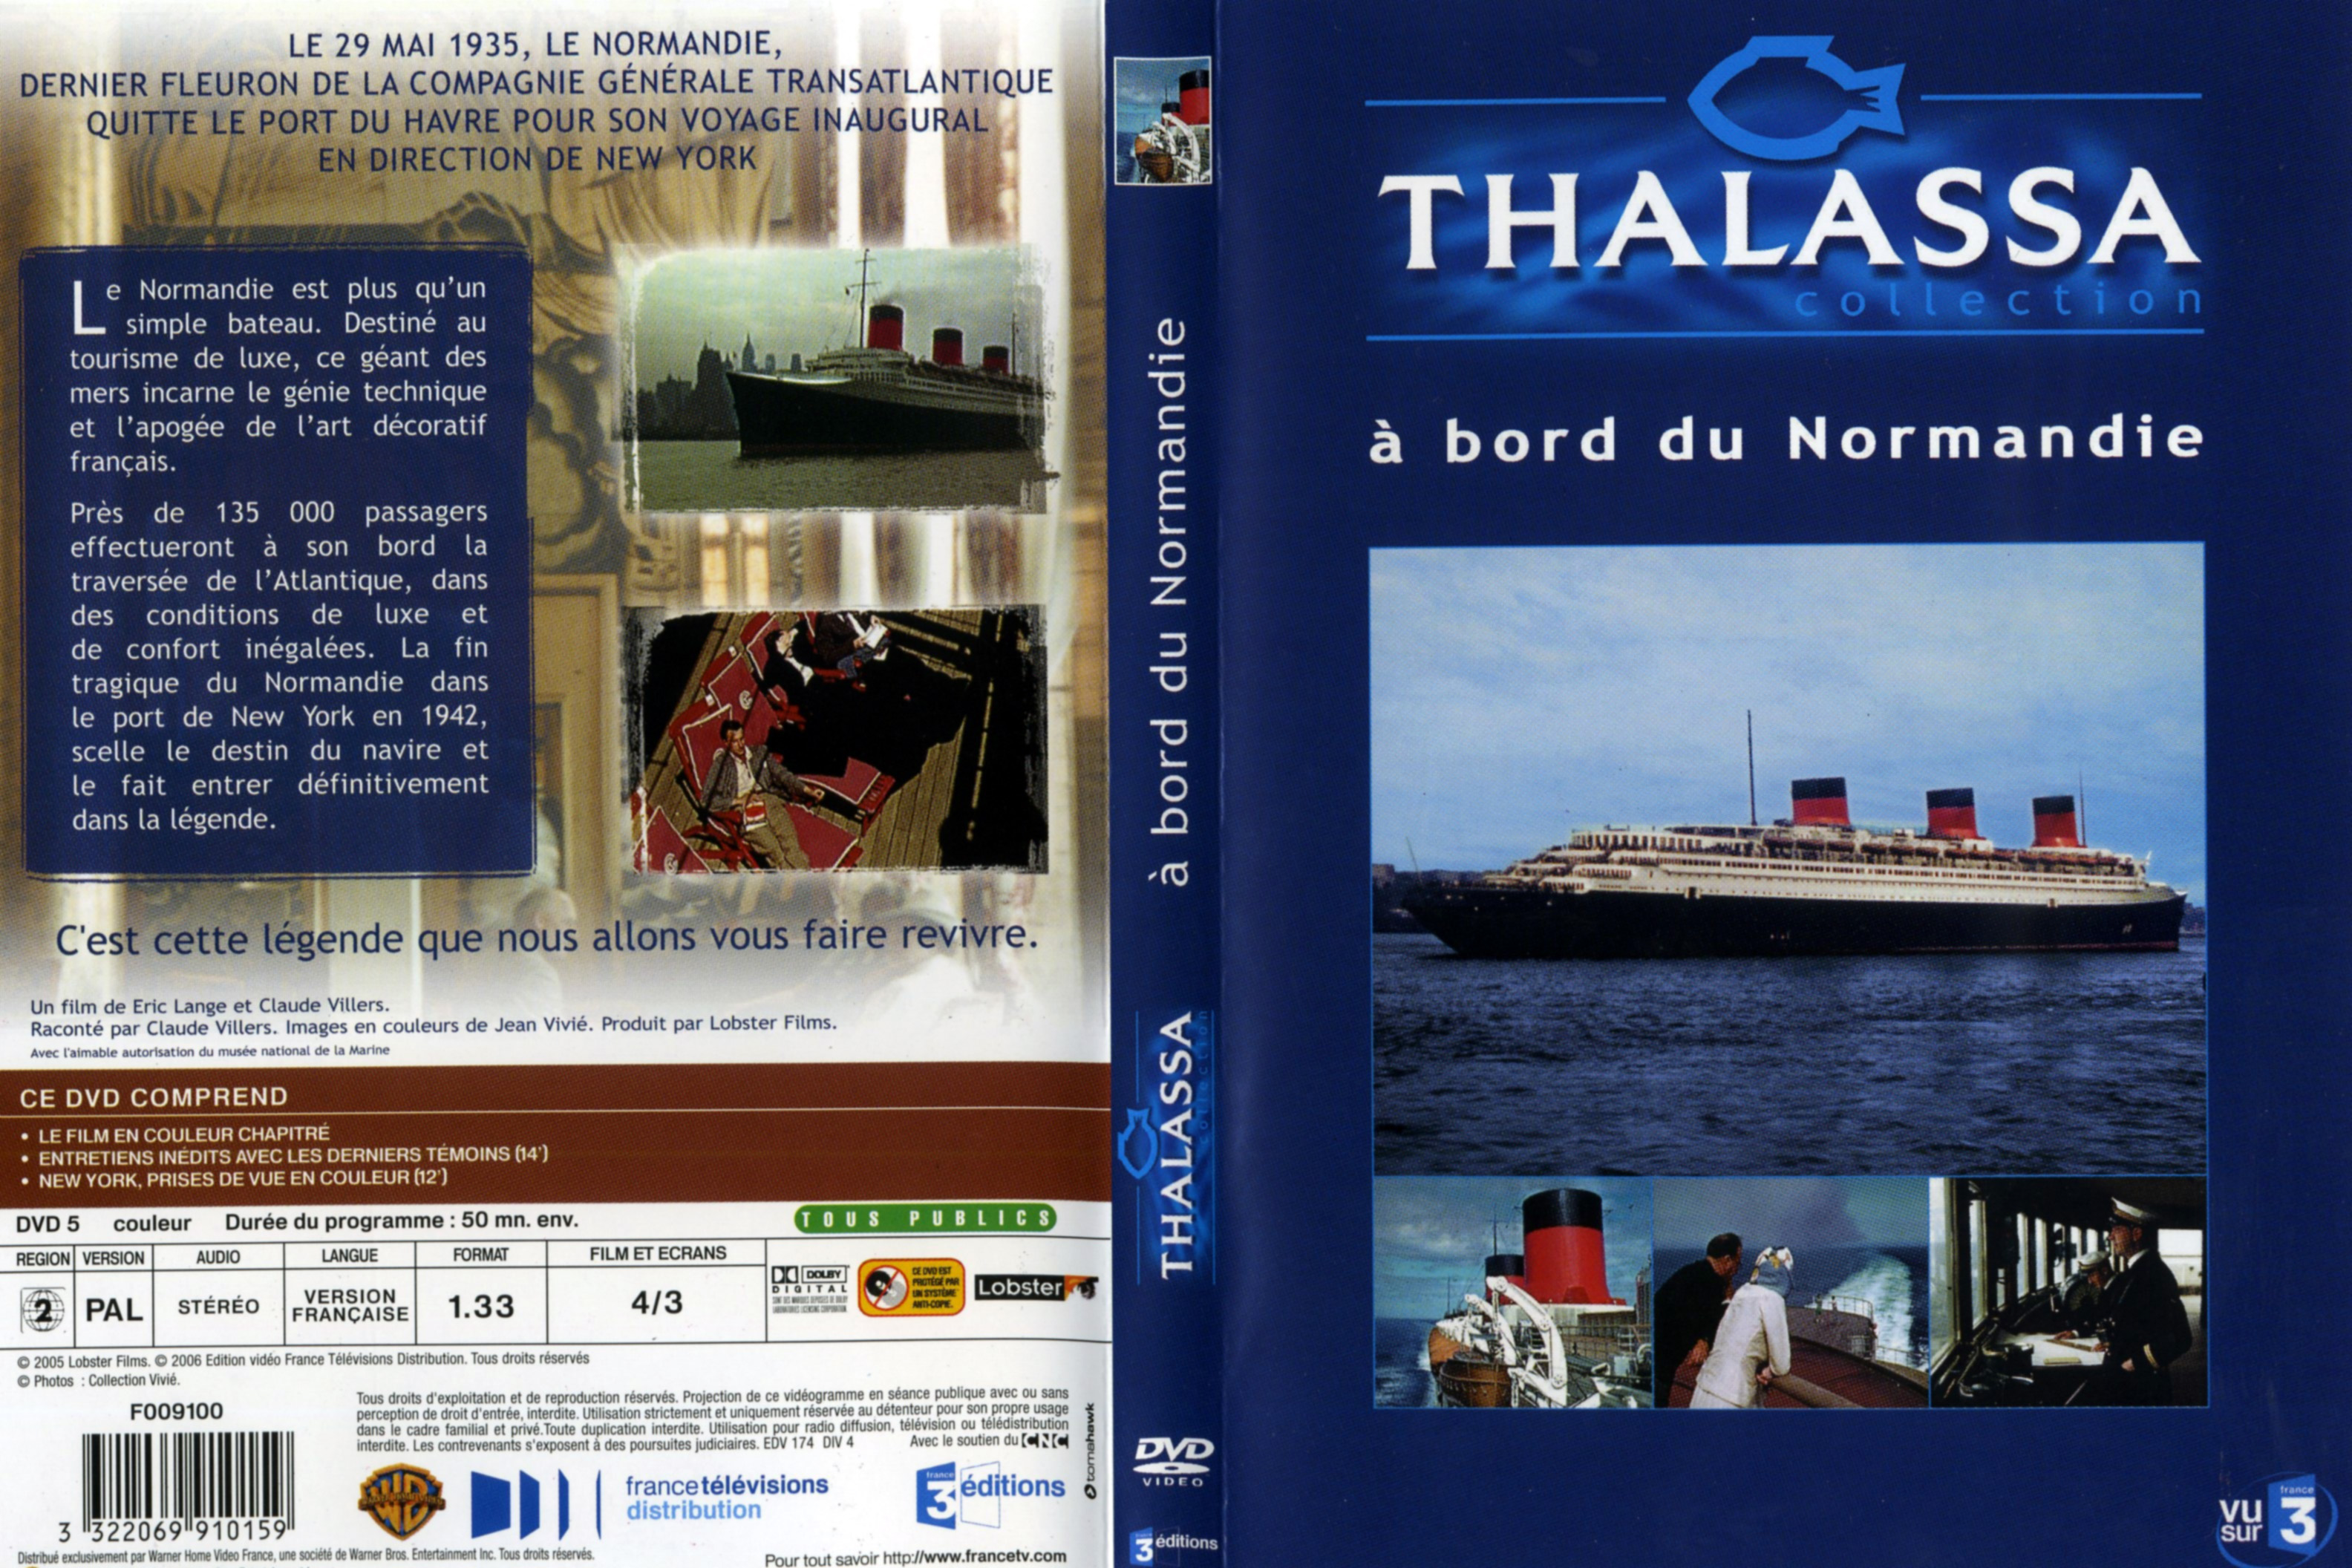 Jaquette DVD Thalassa - A bord du Normandie